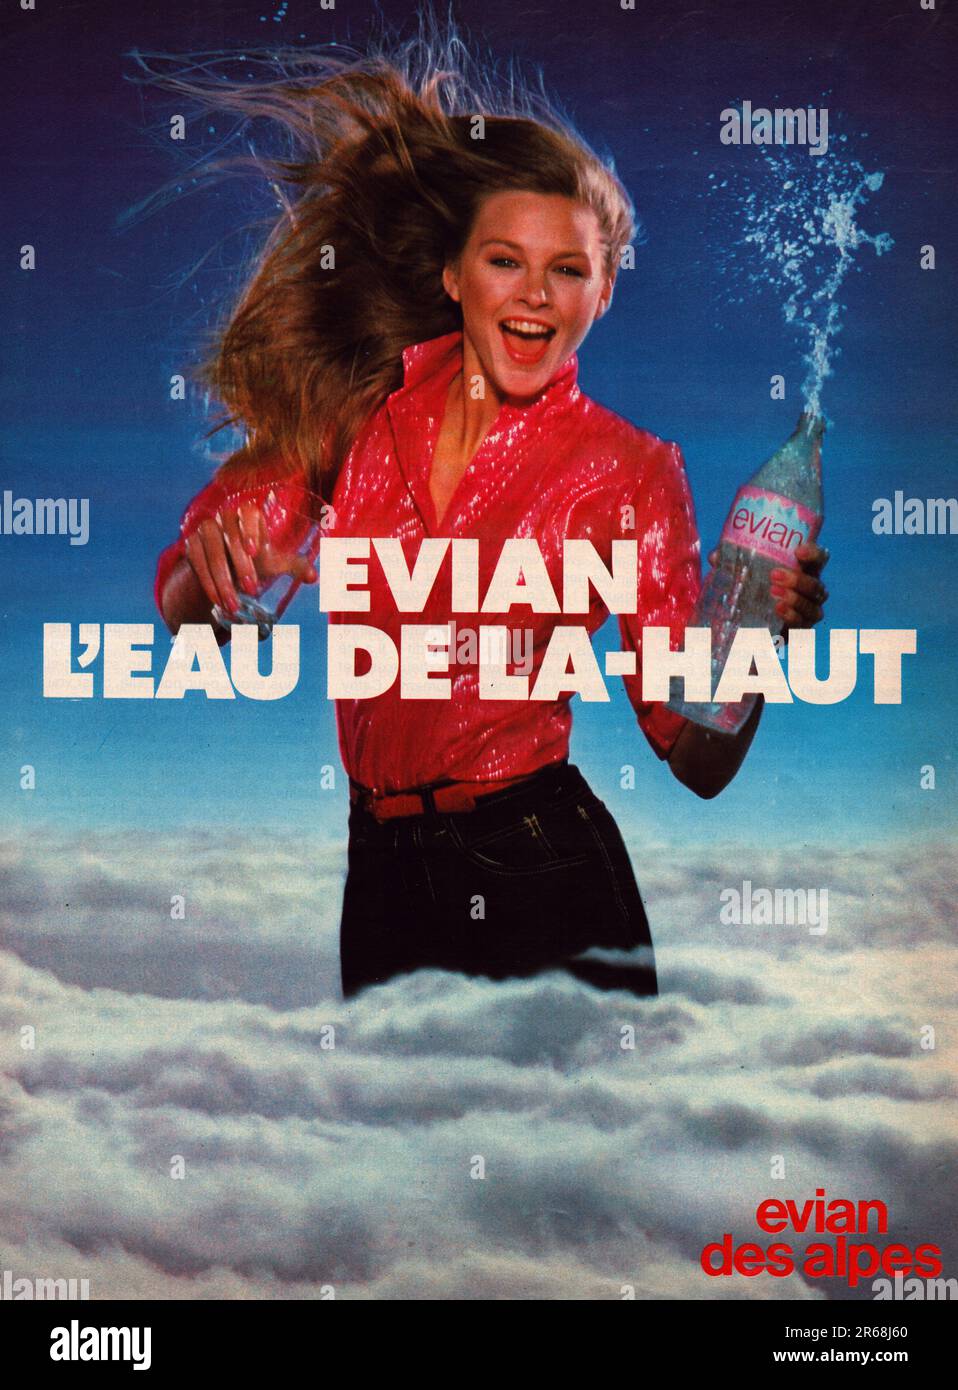 Evian des Alpes Evian Eau publicite Evian l'Eau de La-Haut Stockfoto